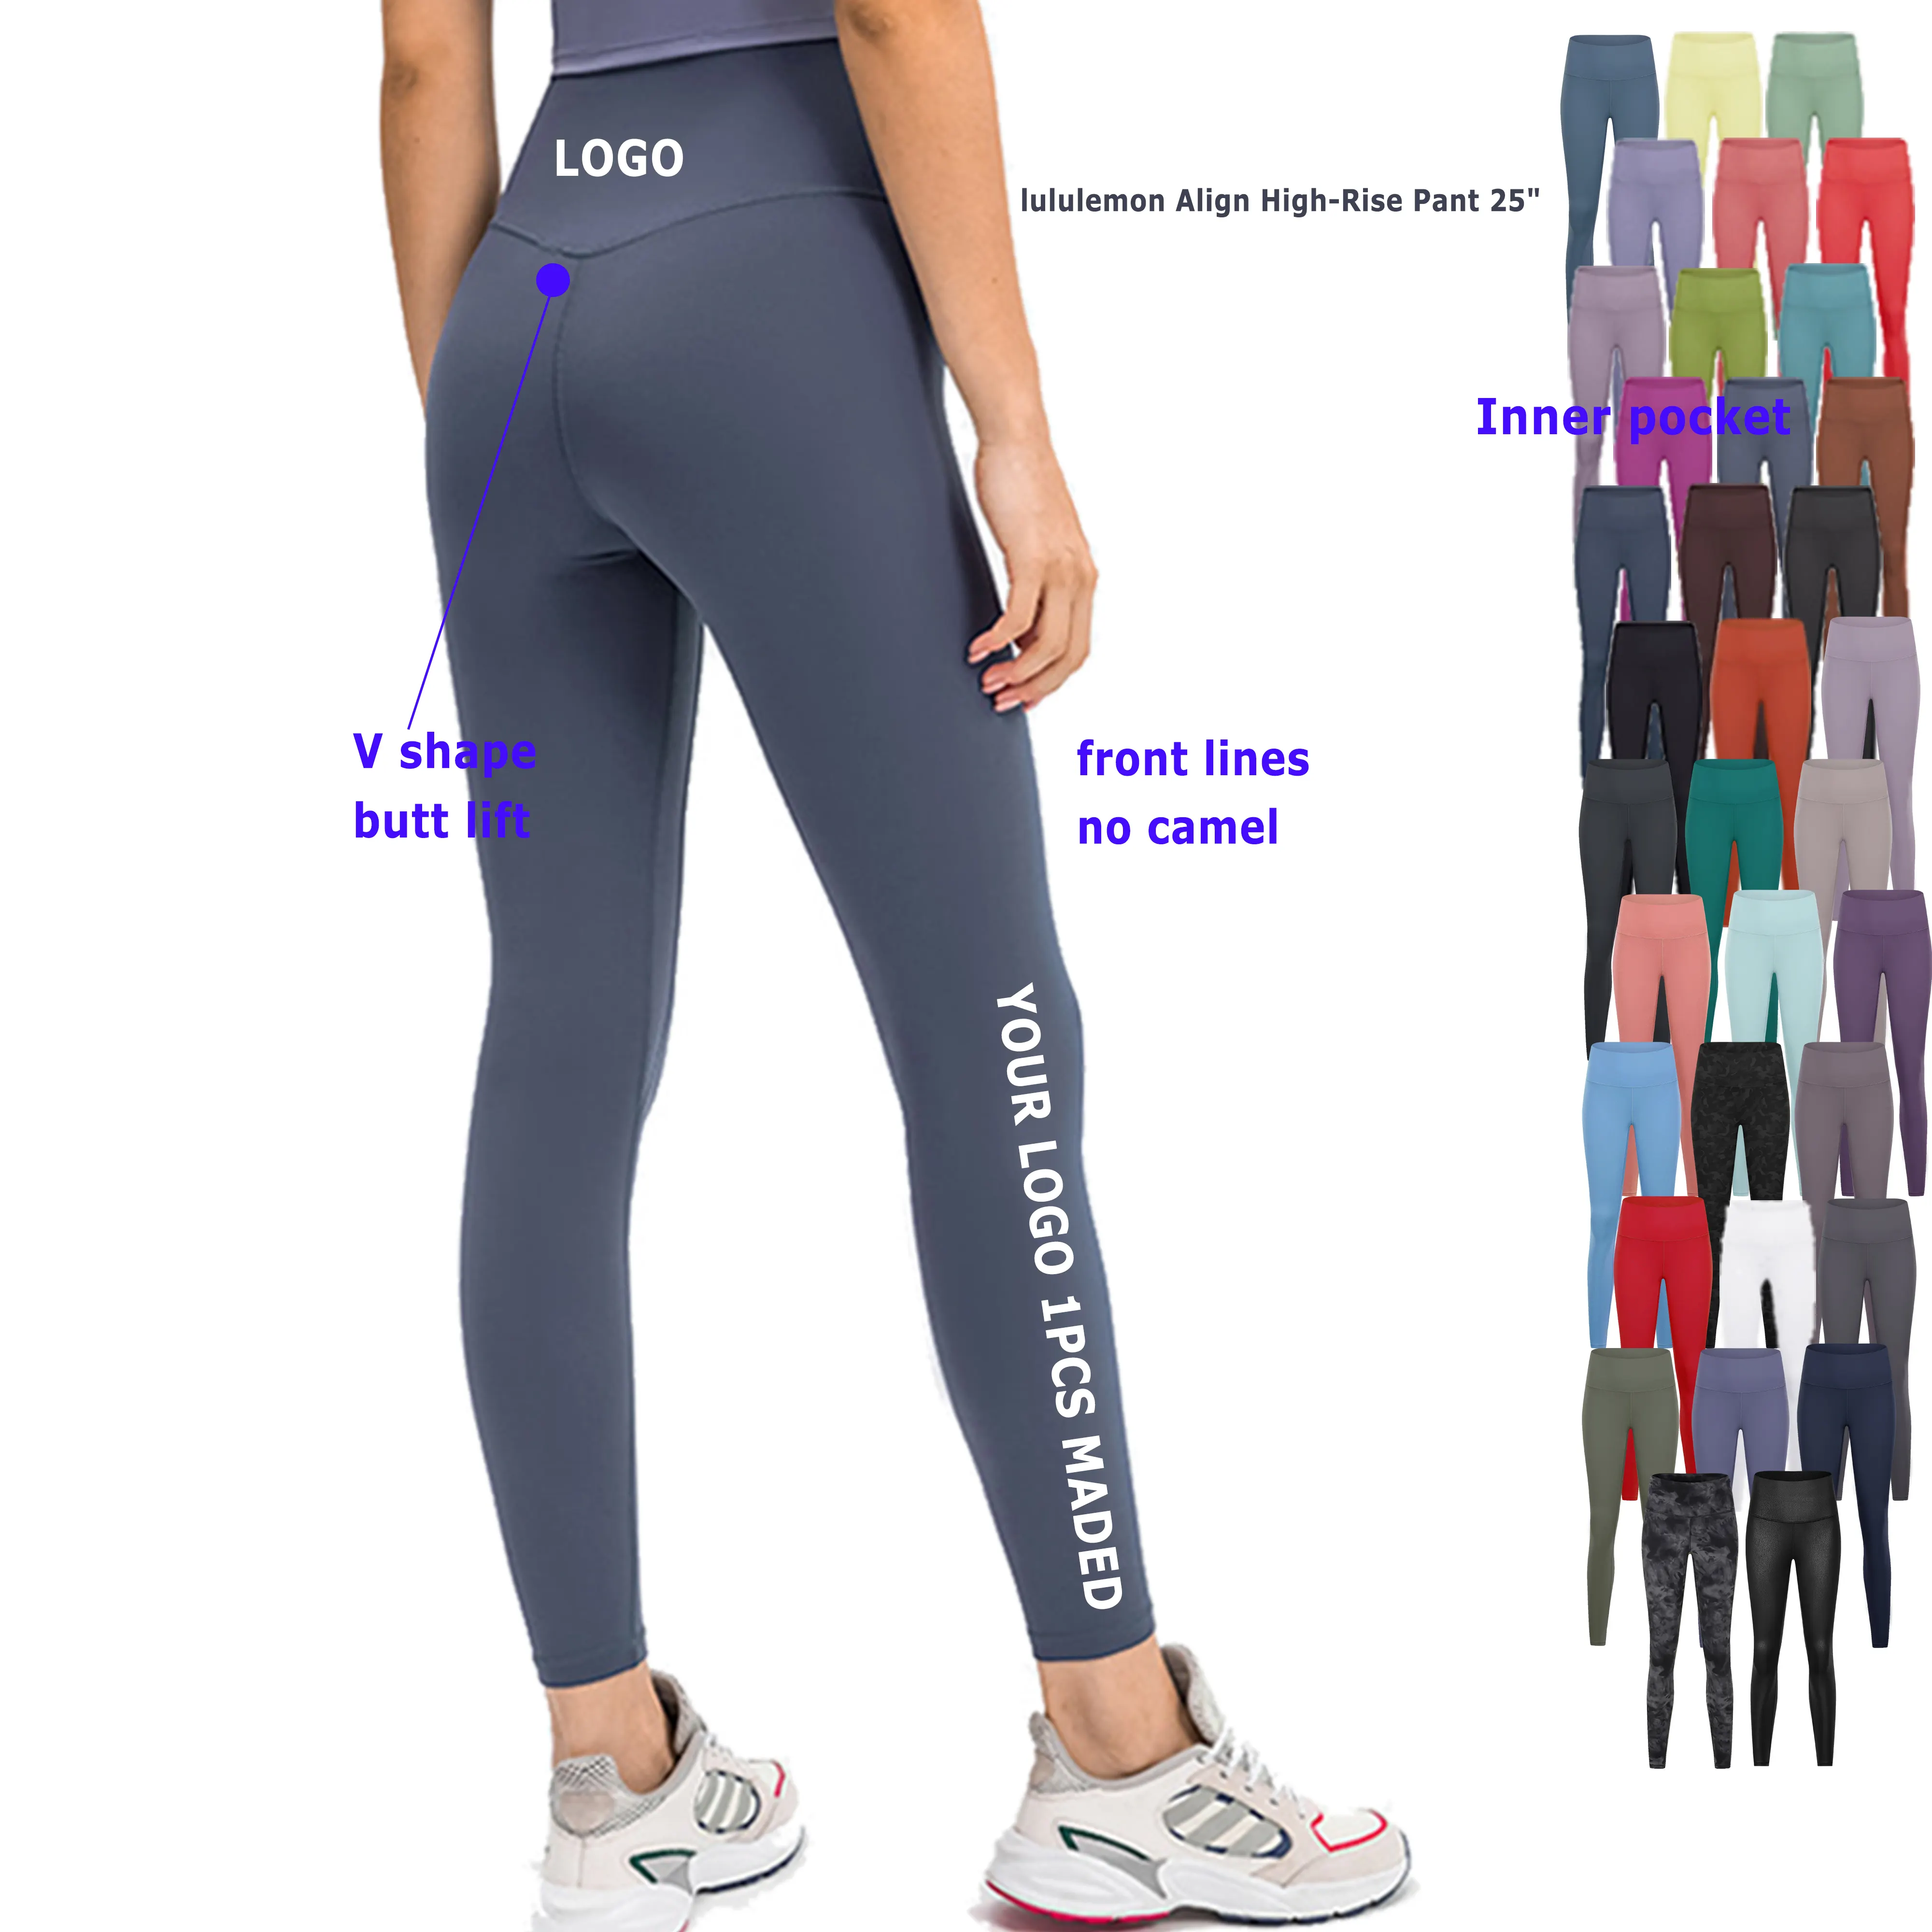 Celana ketat Gym lari legging olahraga atletik berkelanjutan pinggang tinggi lembut Align untuk wanita